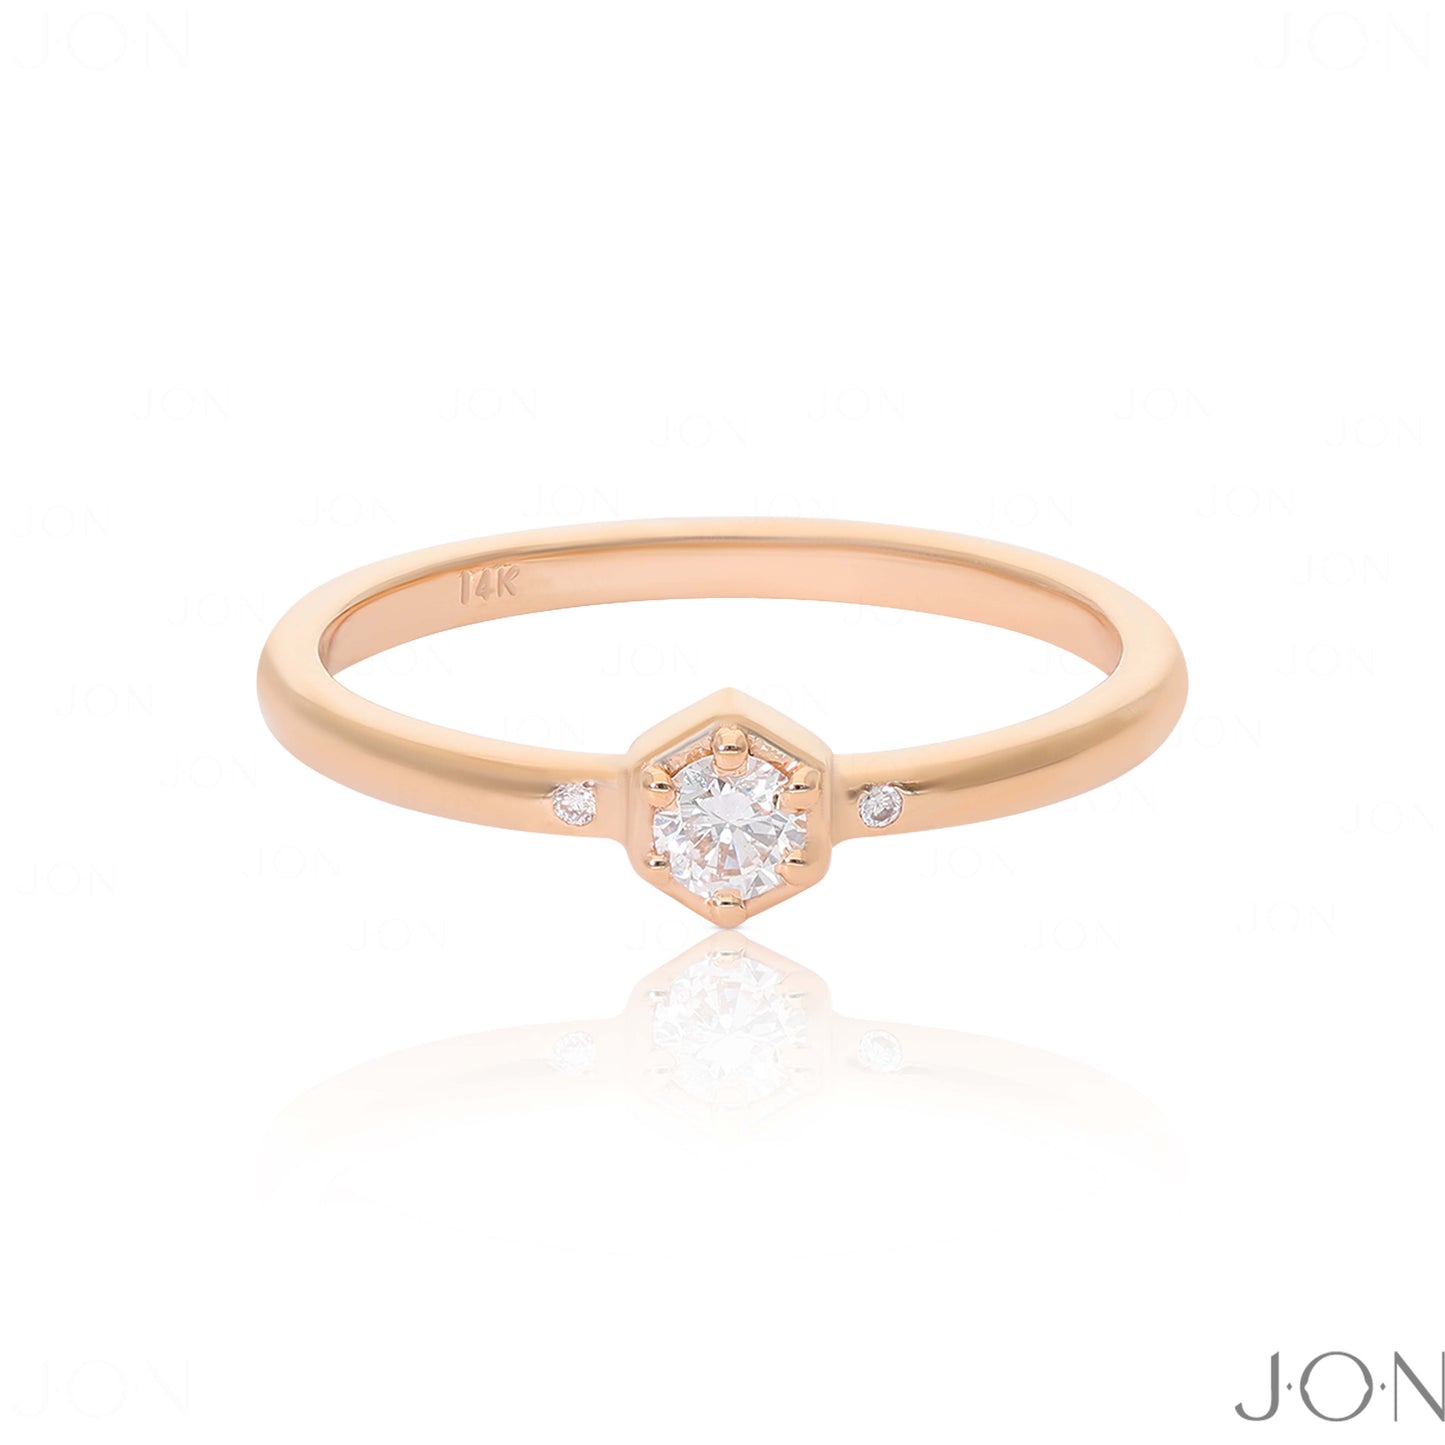 14K Gold 0.10 Ct. Genuine Diamond Wedding Engagement Anniversary Ring Jewelry